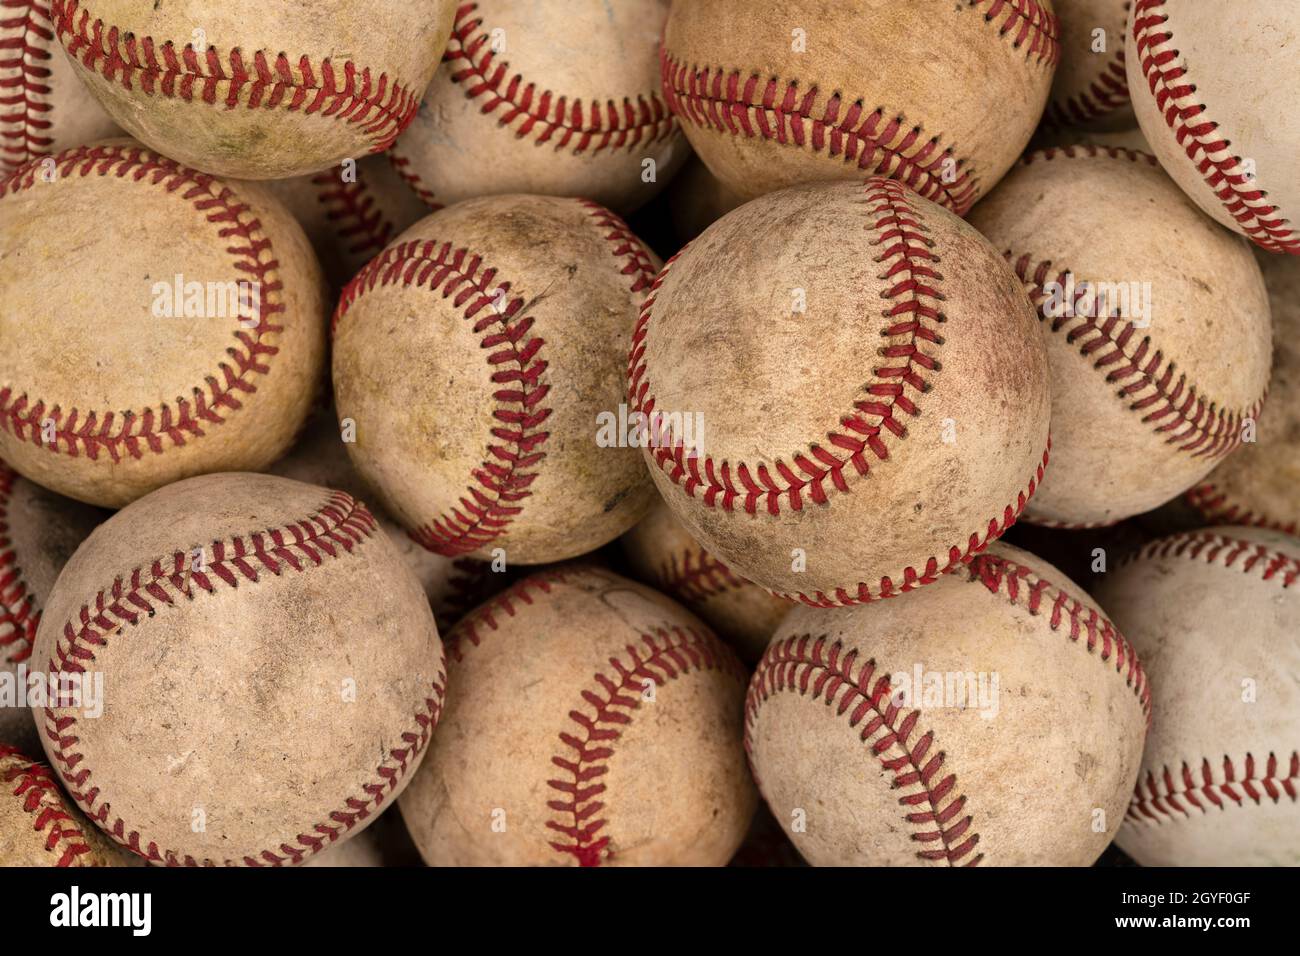 Un gruppo di baseballs vecchi, usati e indossati mostra la dedizione dello sport e l'integrità di questa attrezzatura sportiva per sostenere la prova del tempo. Foto Stock